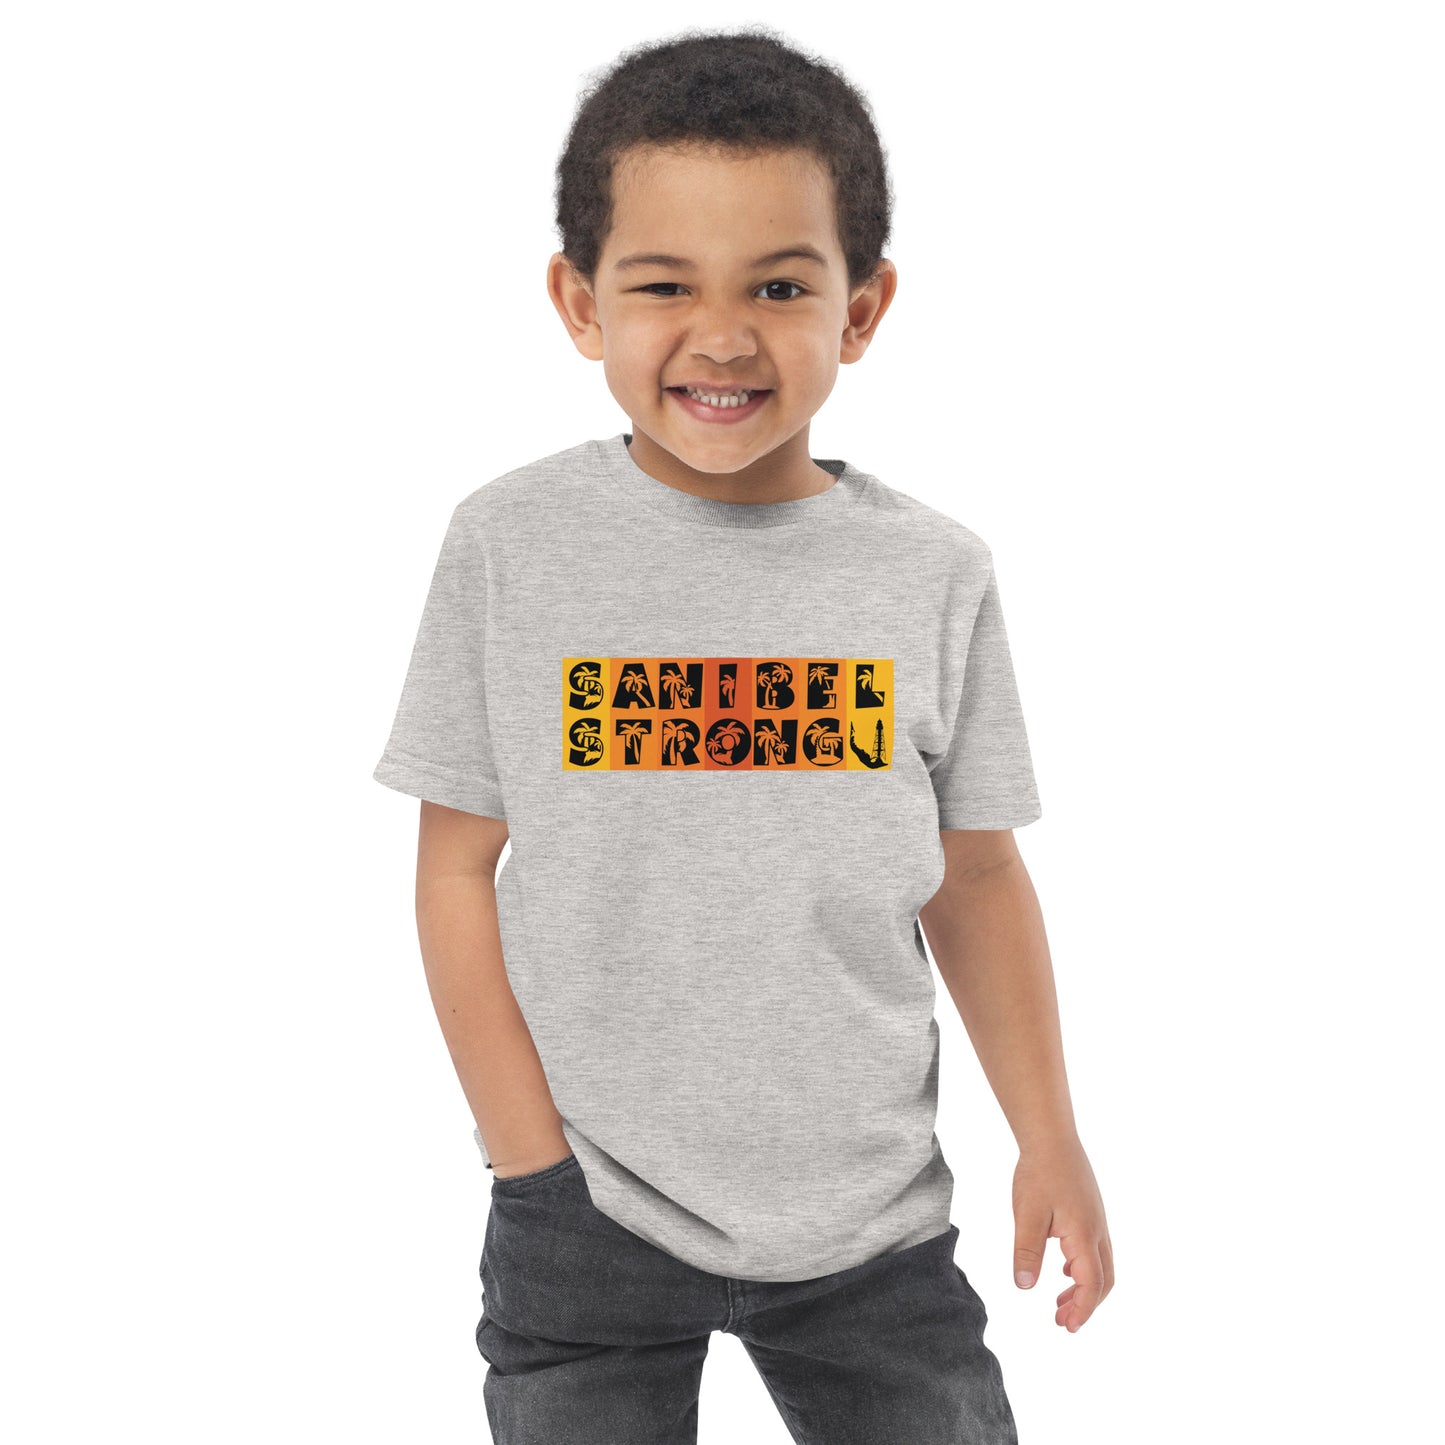 Sanibel Strong Toddler Shirt - Orange Design